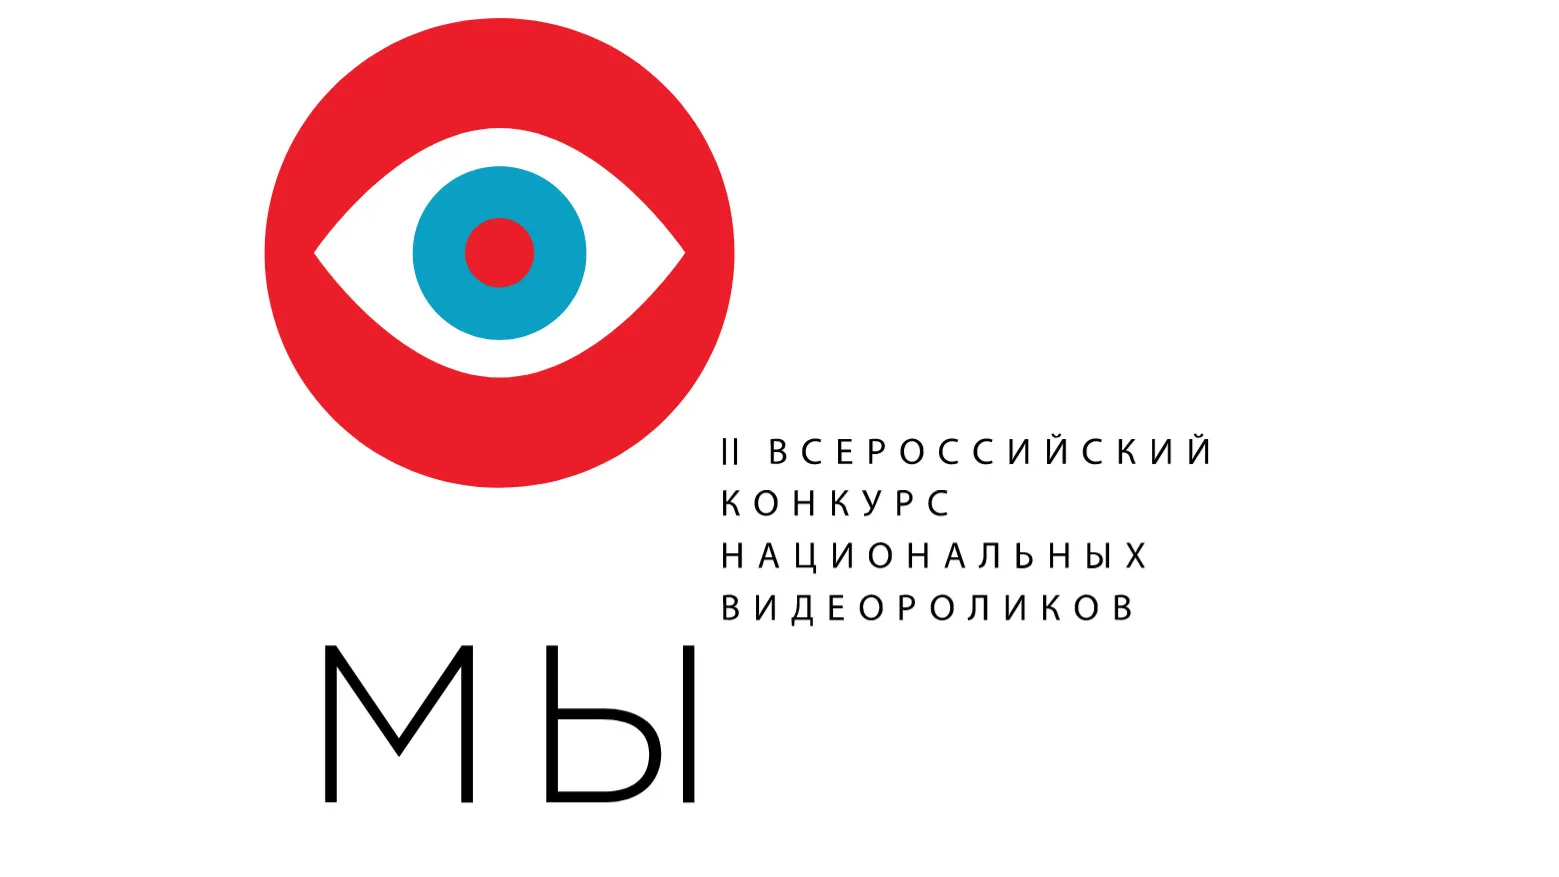 Жителей ЯНАО пригласили принять участие во всероссийском конкурсе национальных видеороликов